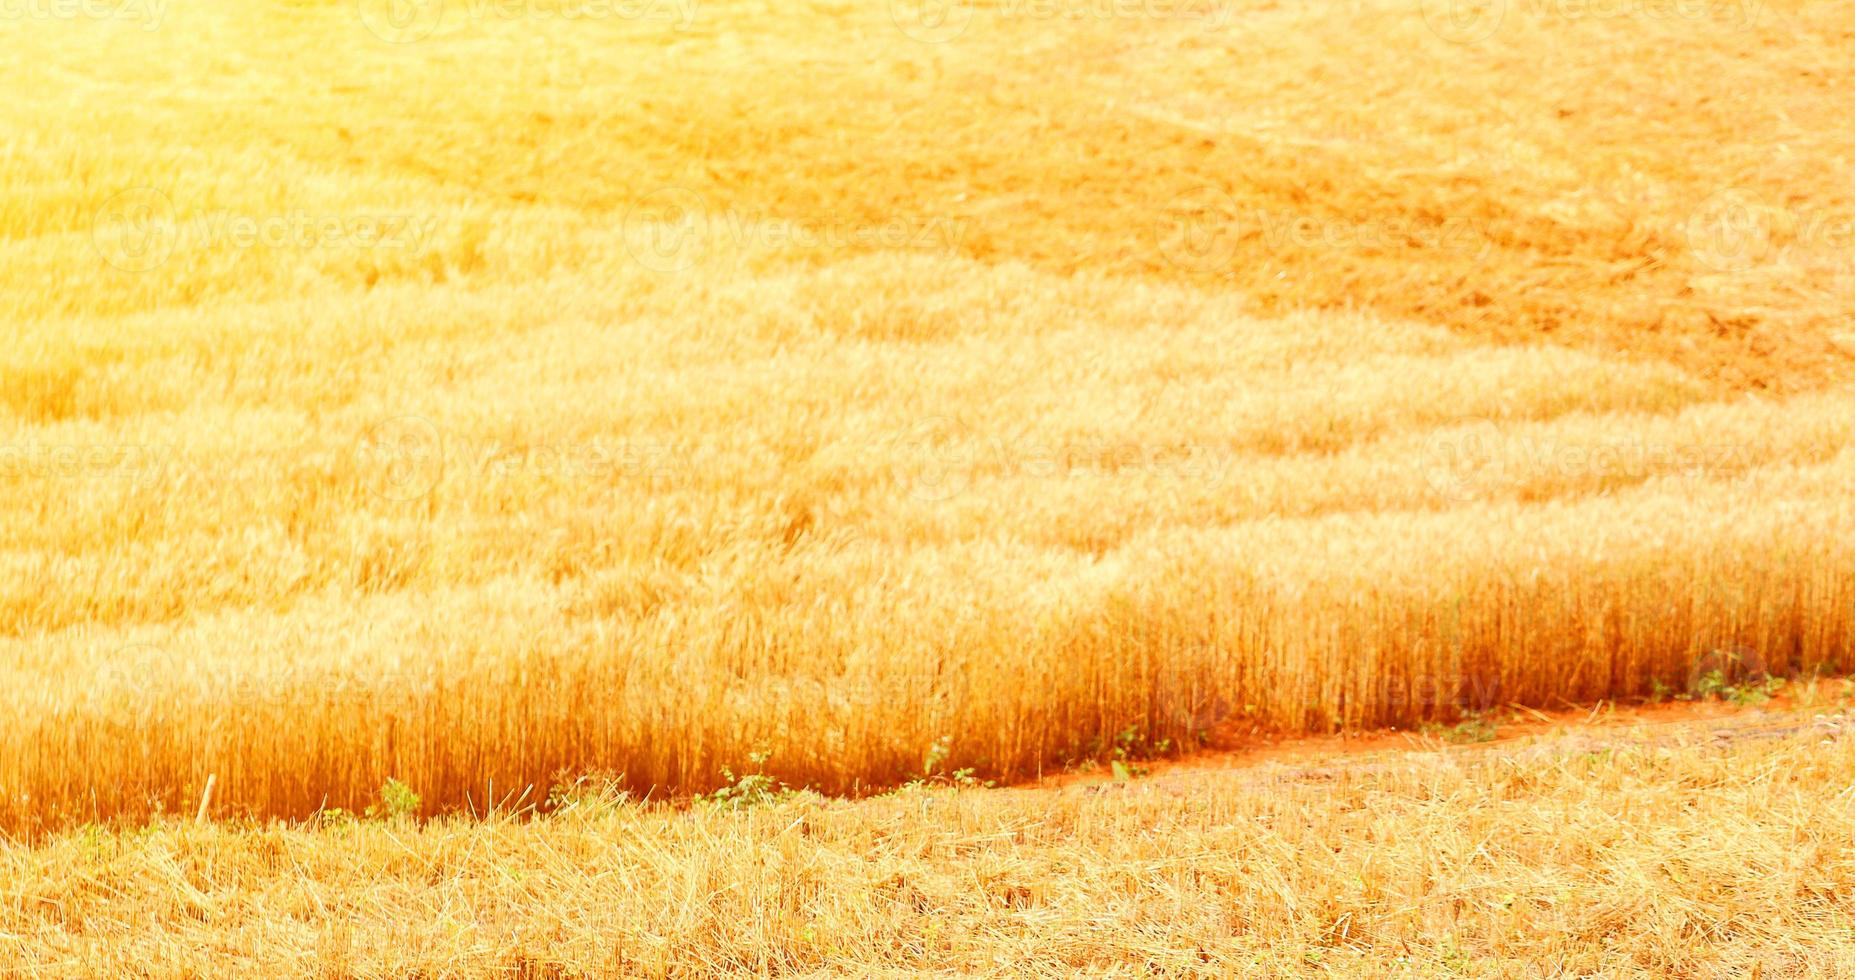 champs de blé doré. le blé bien mûr est prêt à être récolté. avoine, seigle, orge. culture du blé. photo